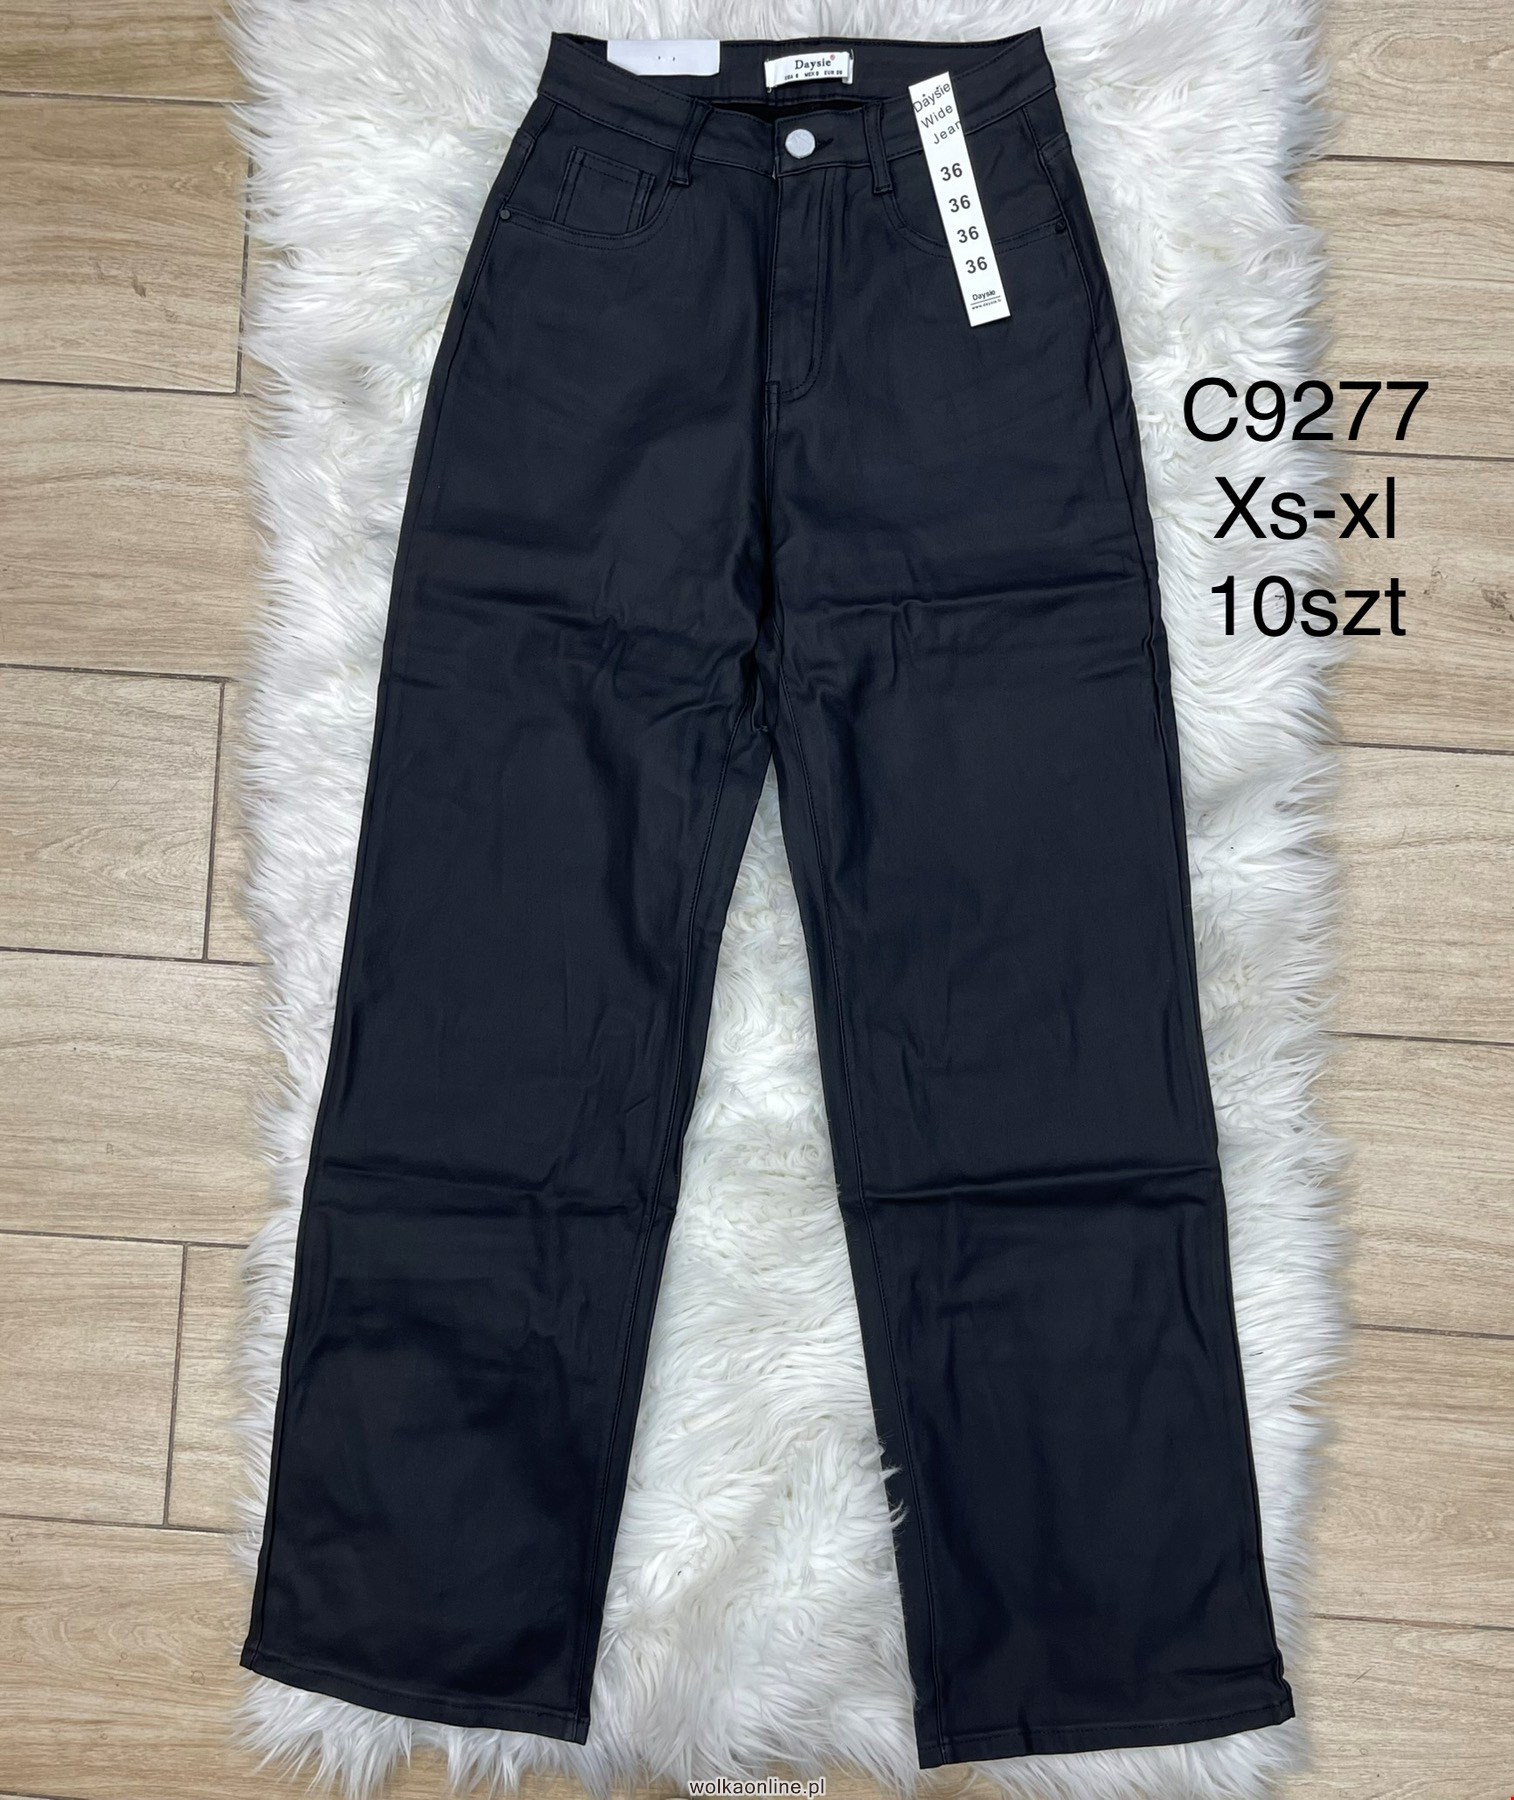 Spodnie z eko-skóry damskie C9277 1 kolor XS-XL